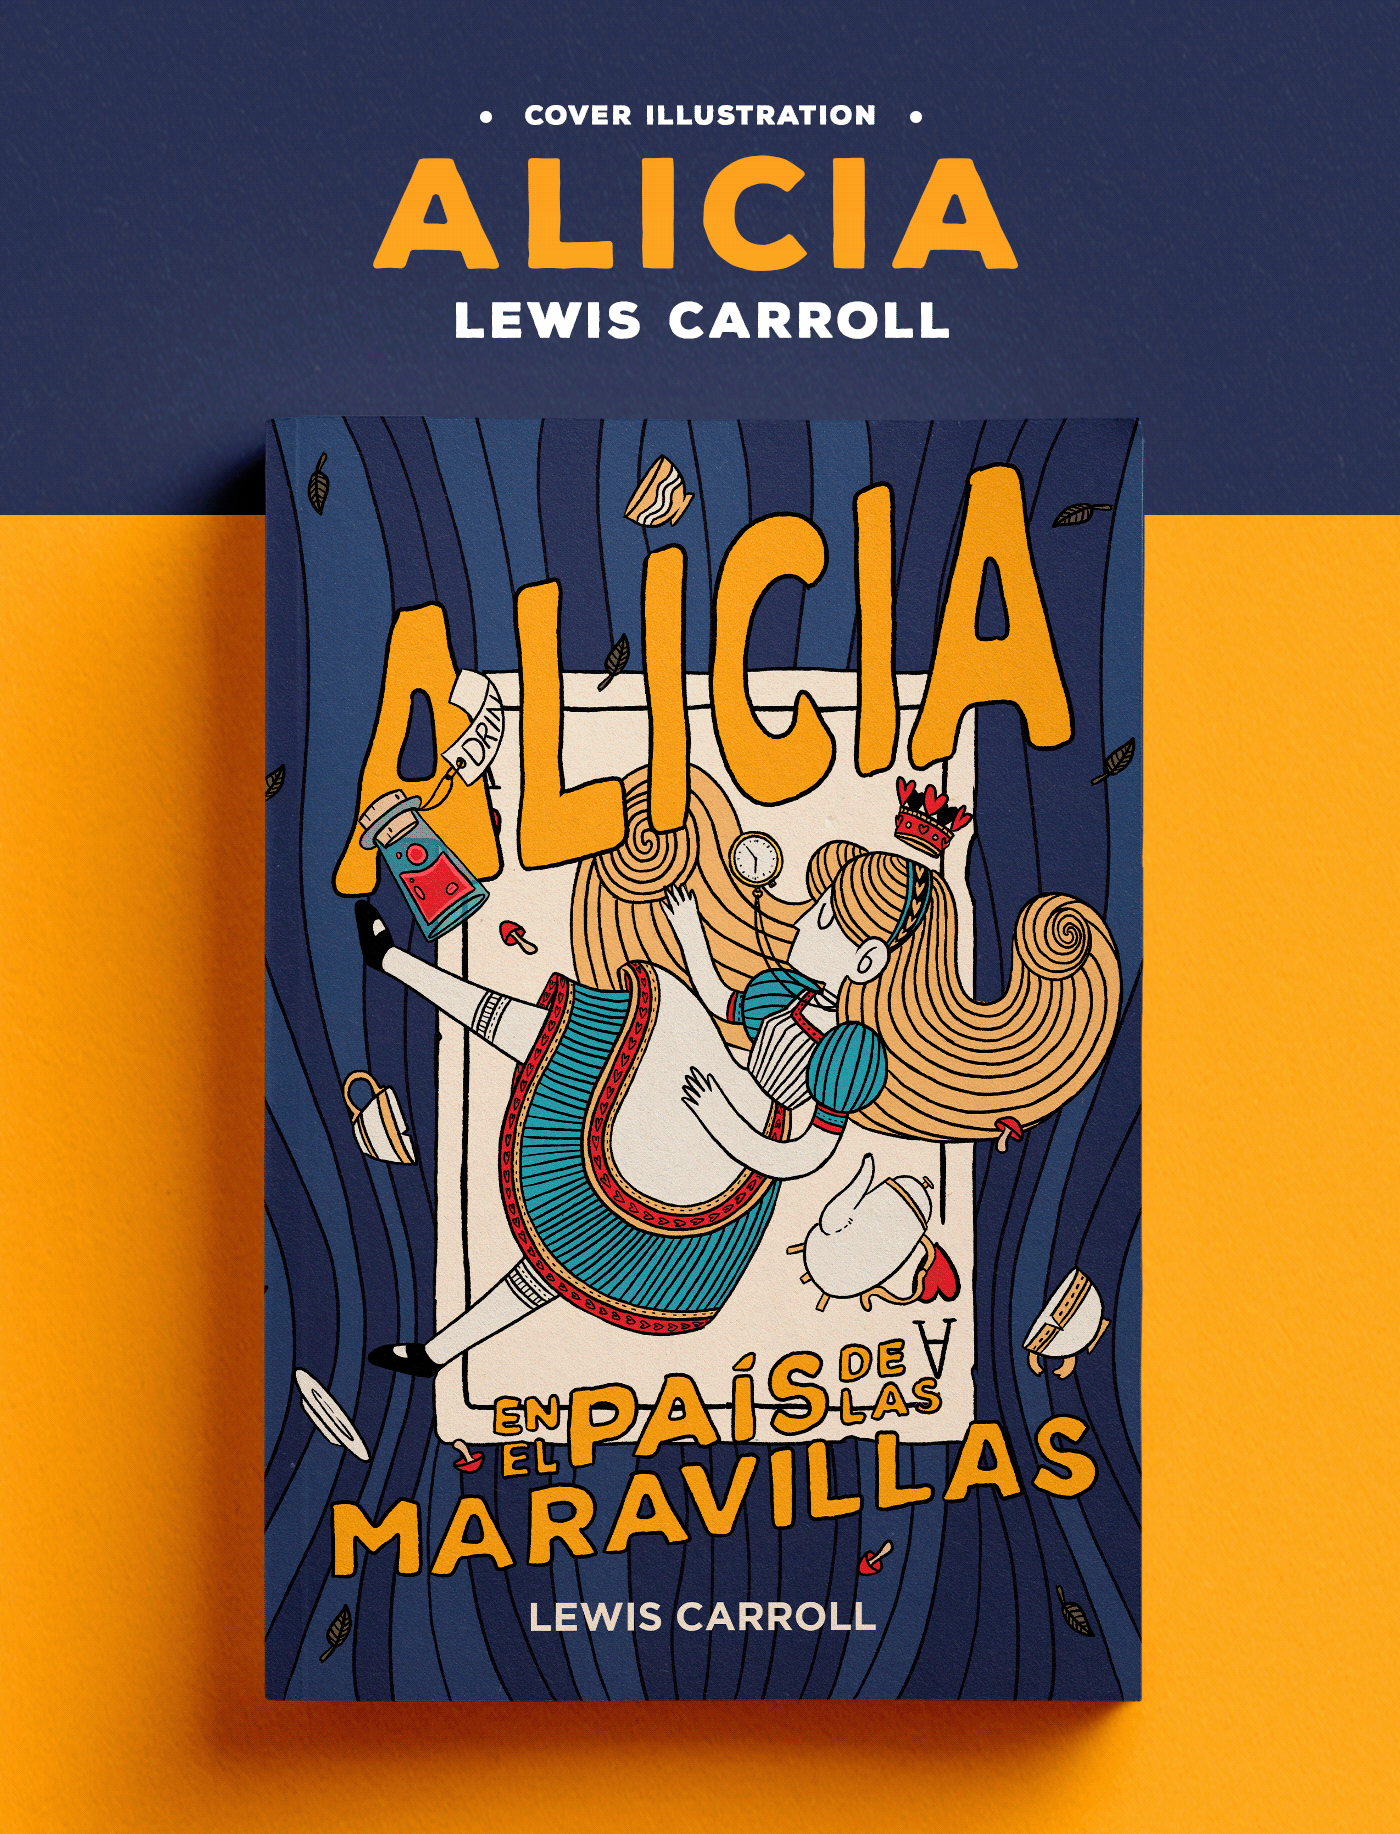 Alice's alicia book book cover cover Cover Book ilustracion ilustration lewis carroll